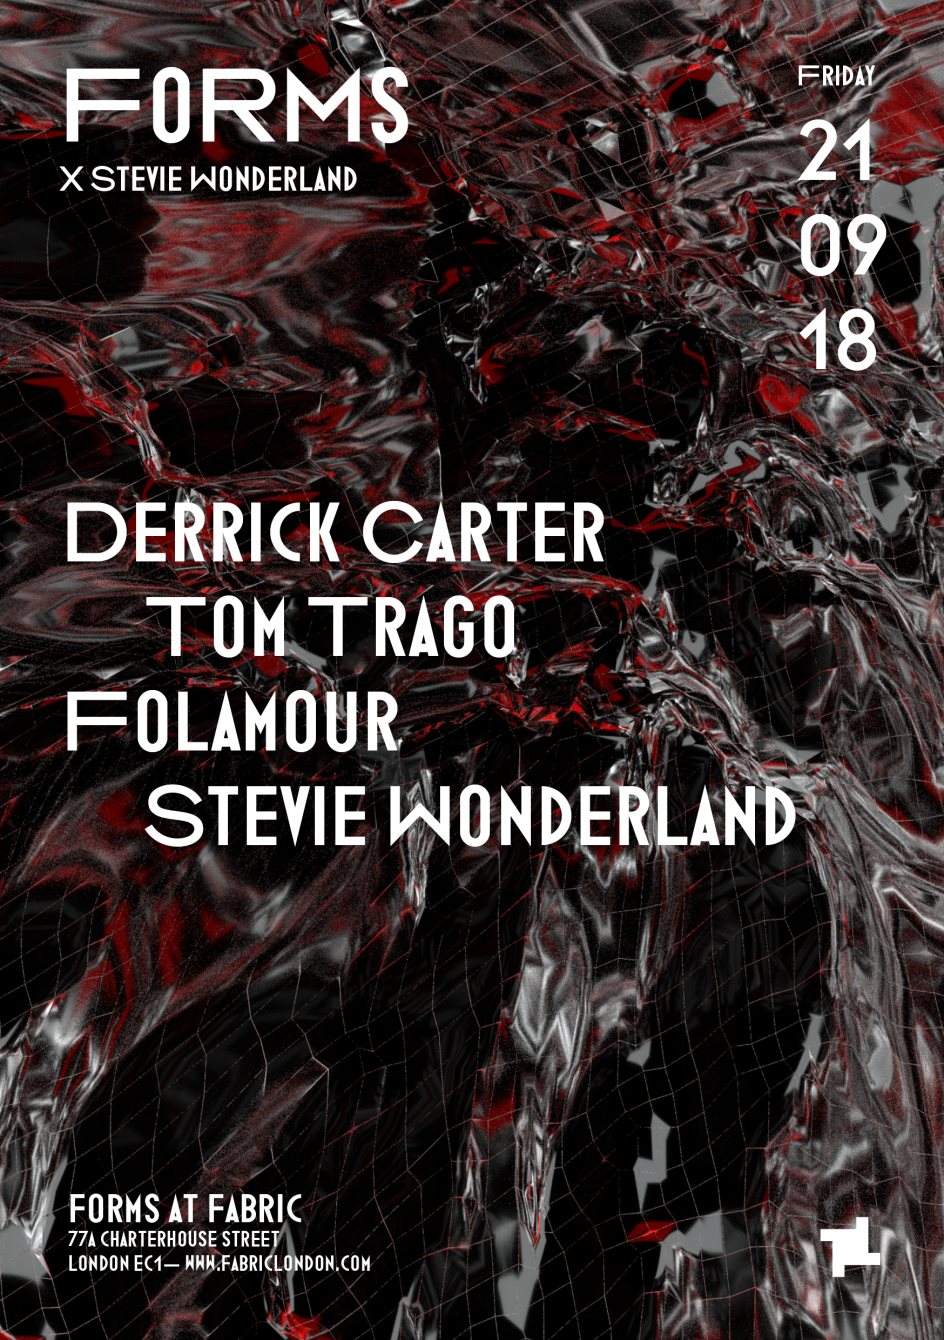 Forms x Stevie Wonderland: Derrick Carter, Tom Trago & More - フライヤー裏